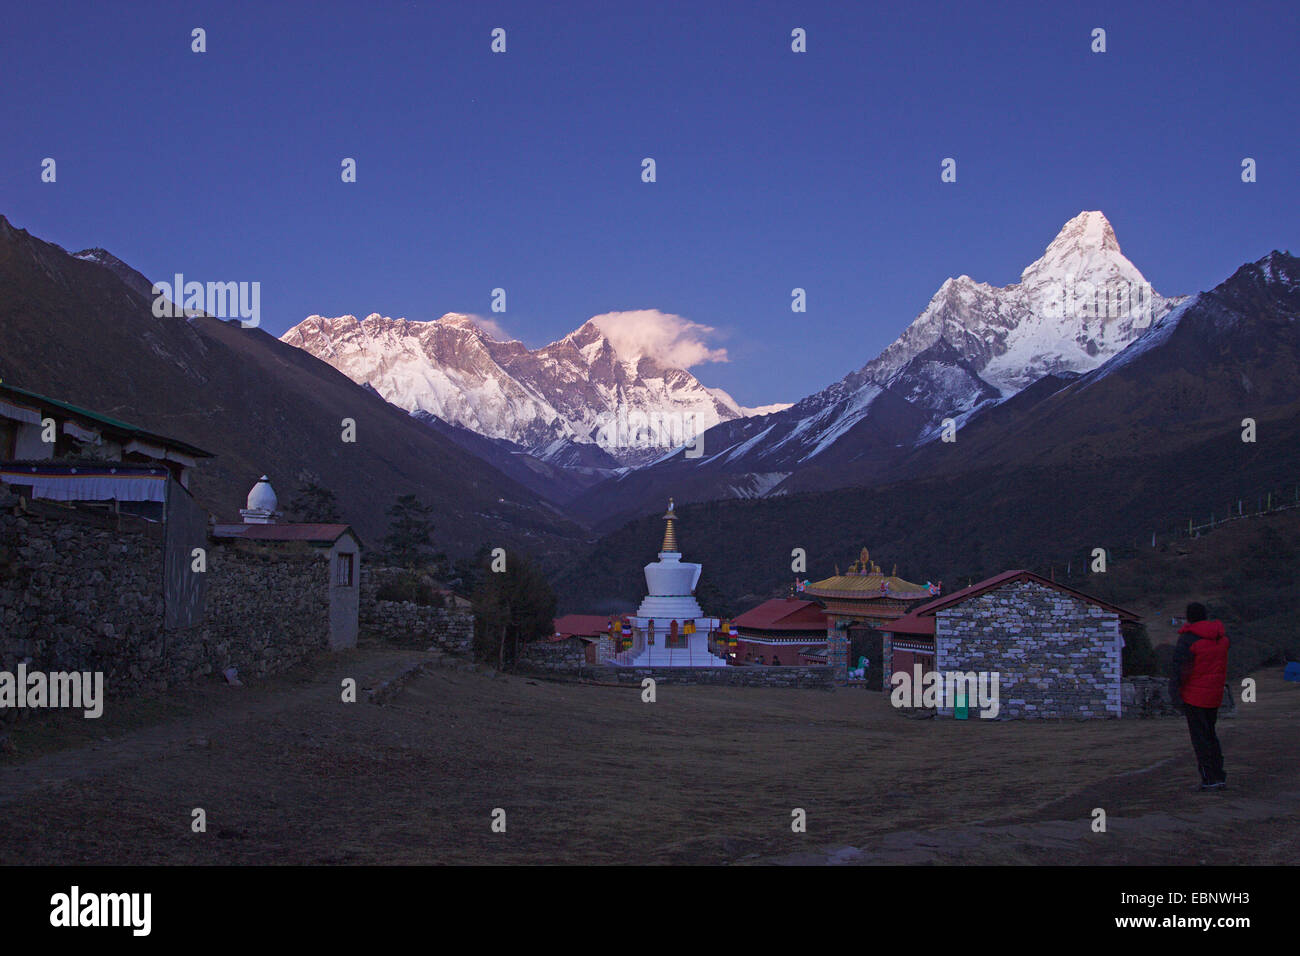 Vista desde Tengboche monasterio al monte Everest, Nuptes, Lhotse y el Ama Dablam en luz del atardecer, Nepal, Himalaya, Khumbu Himal Foto de stock